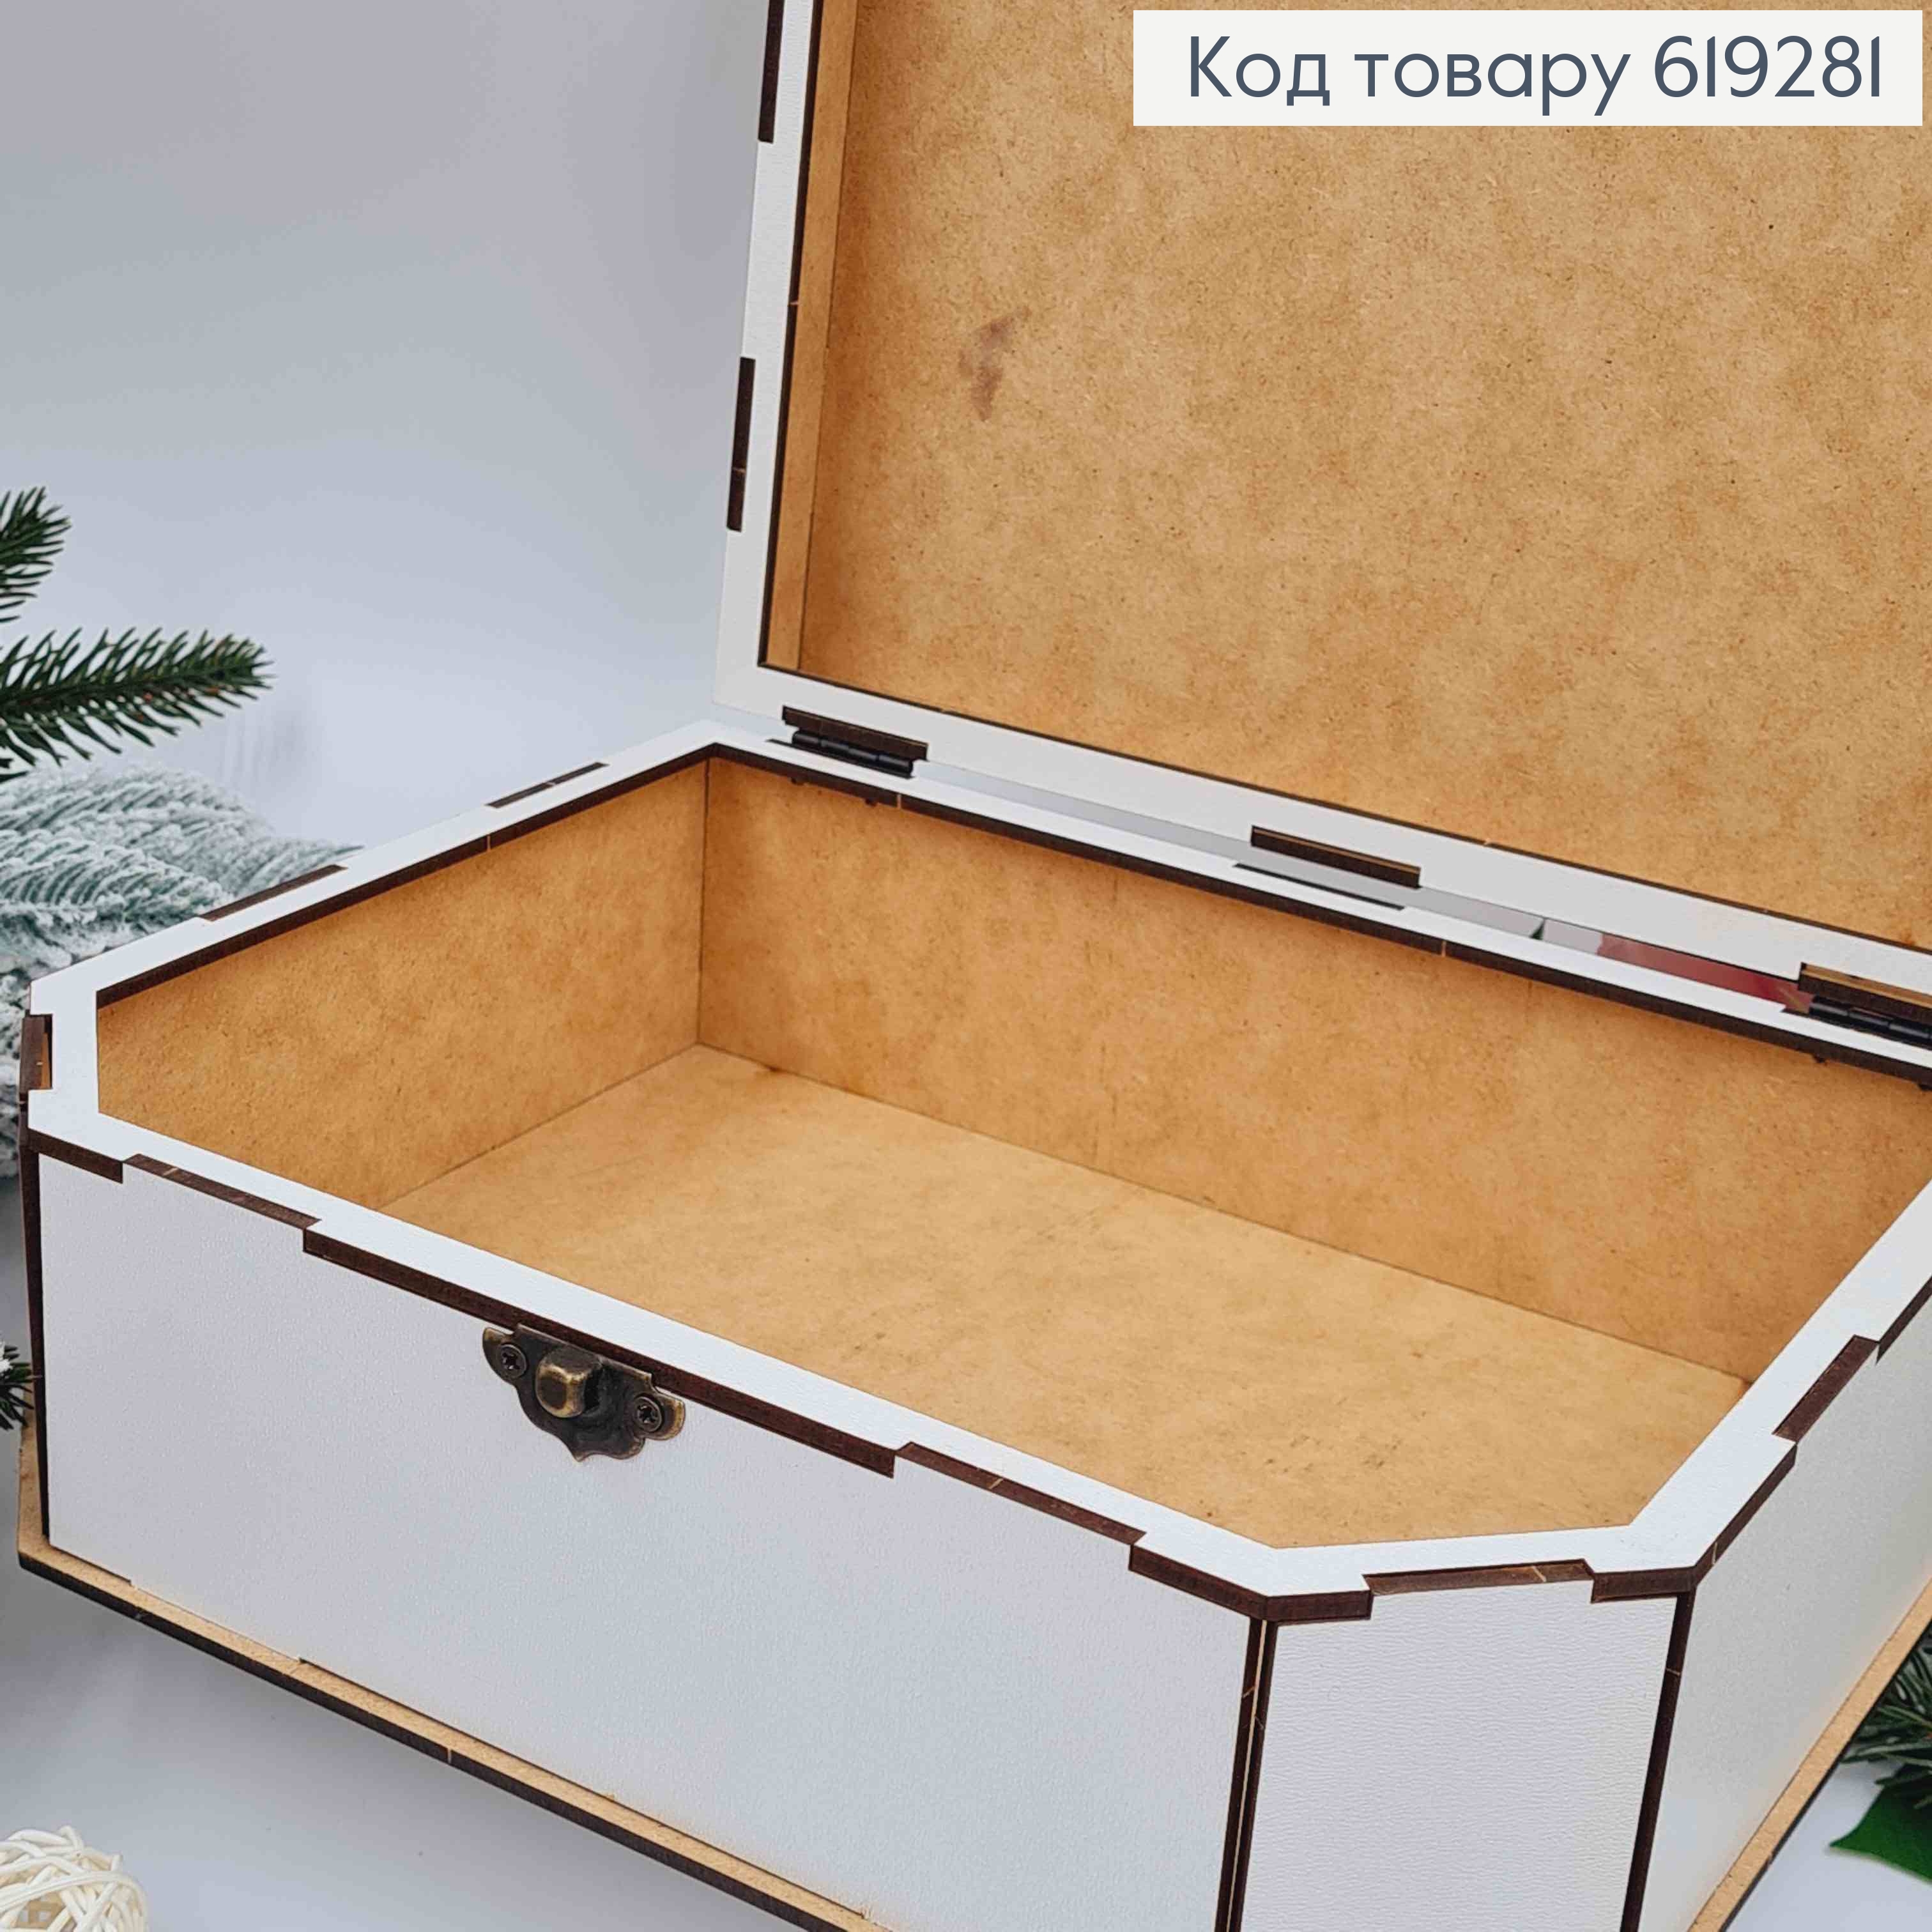 Деревянная подарочная коробка, Белая, 24*19*6см, на застежке. Украина 619281 фото 3